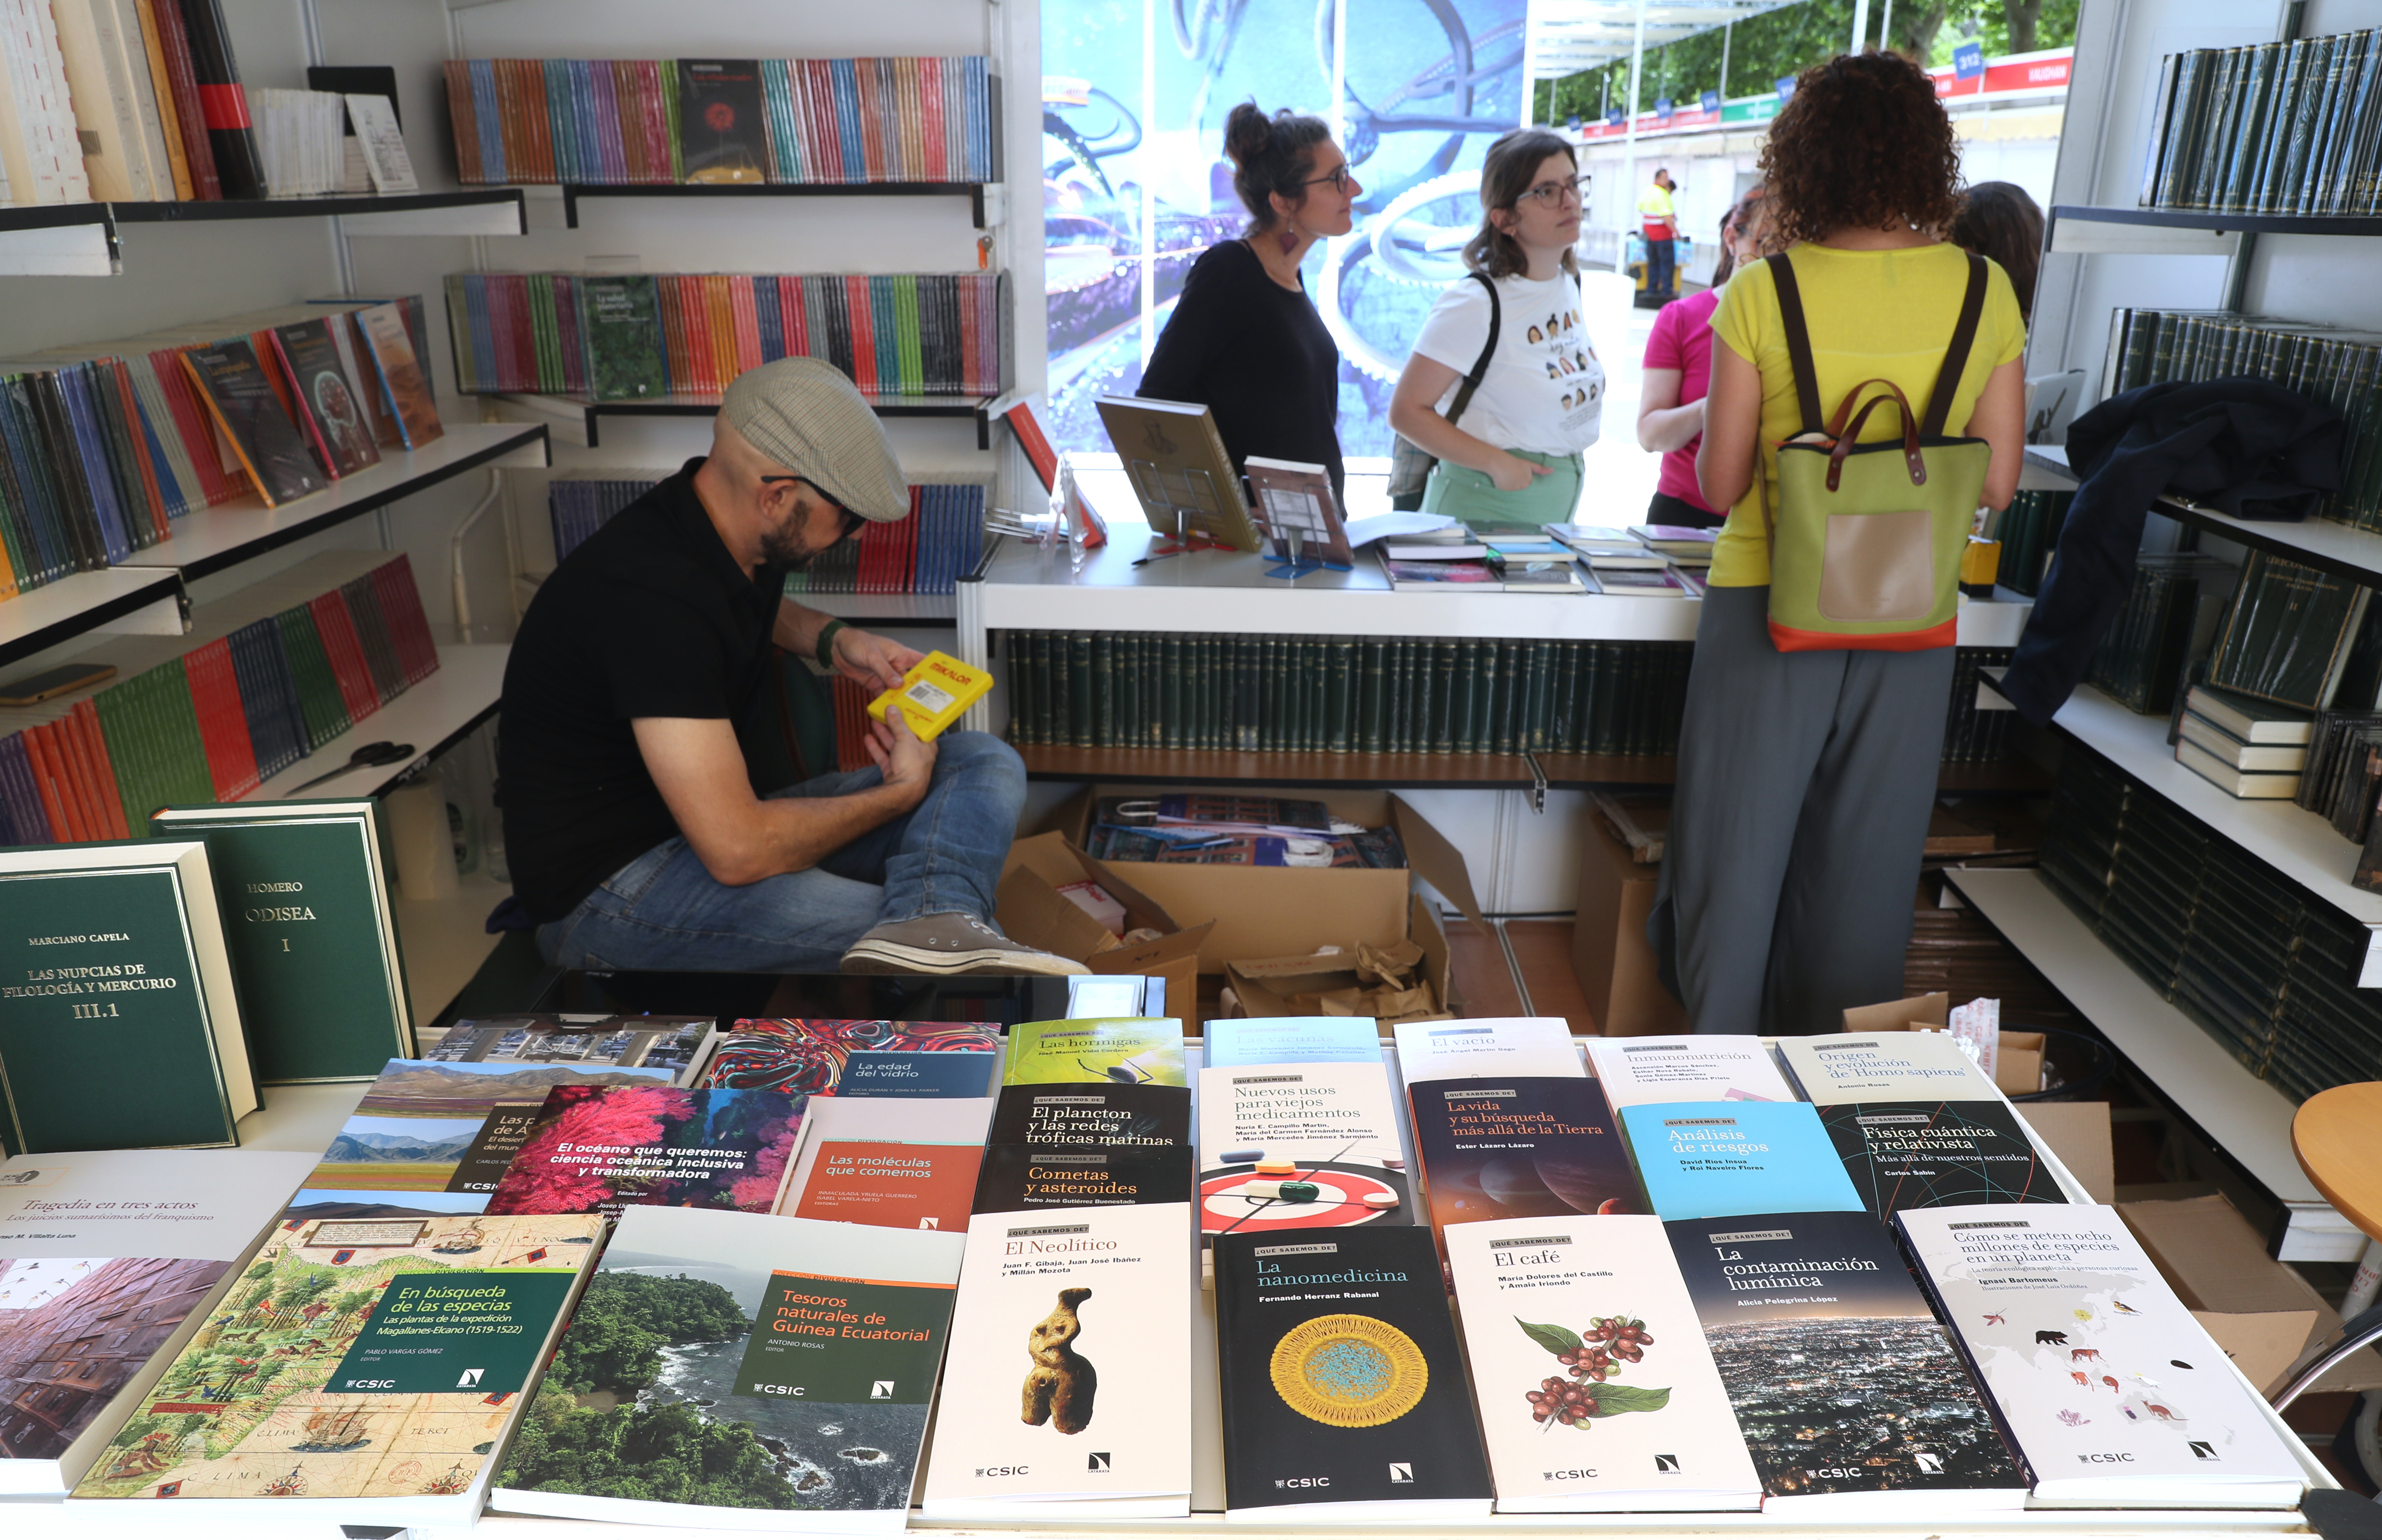 Libros sobre ciencia en la Feria del Libro en Madrid.